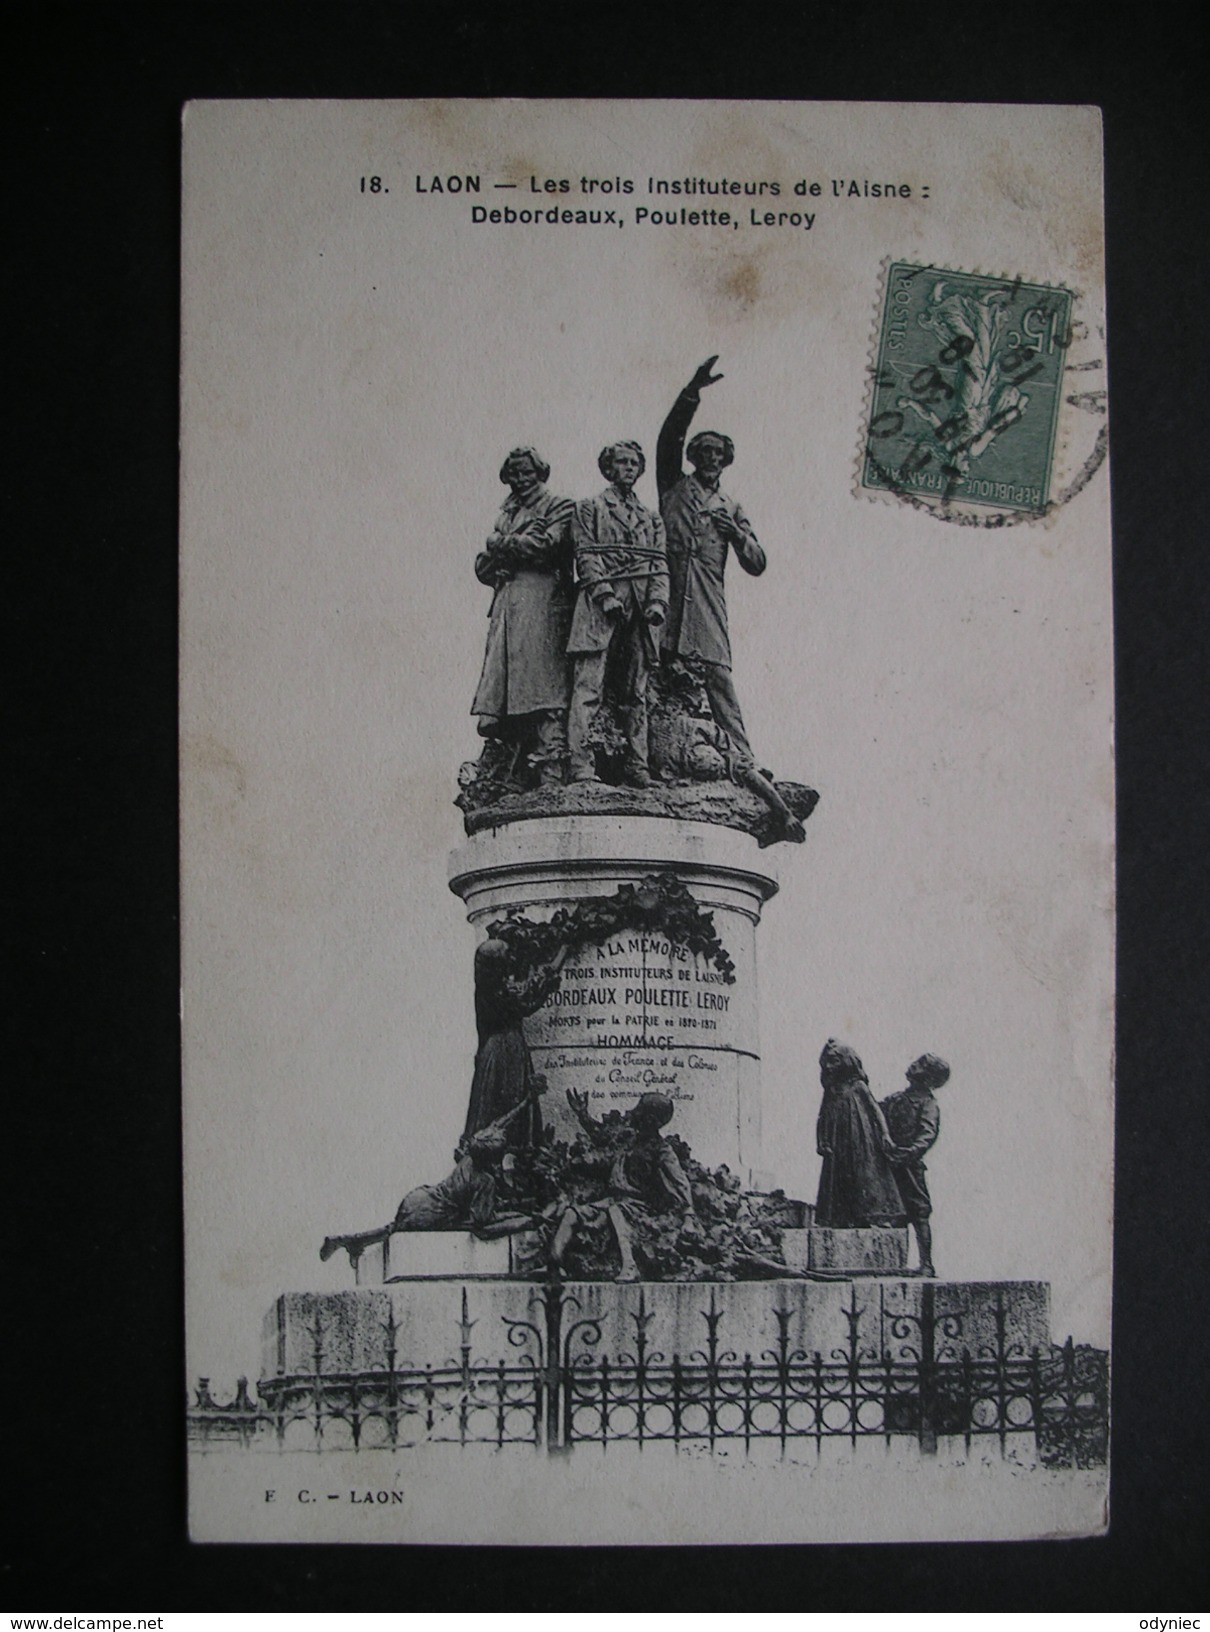 Laon-Les Trois Instituteurs De L'Aisne:Debordeaux,Poulette,Leroy 1919 - Picardie